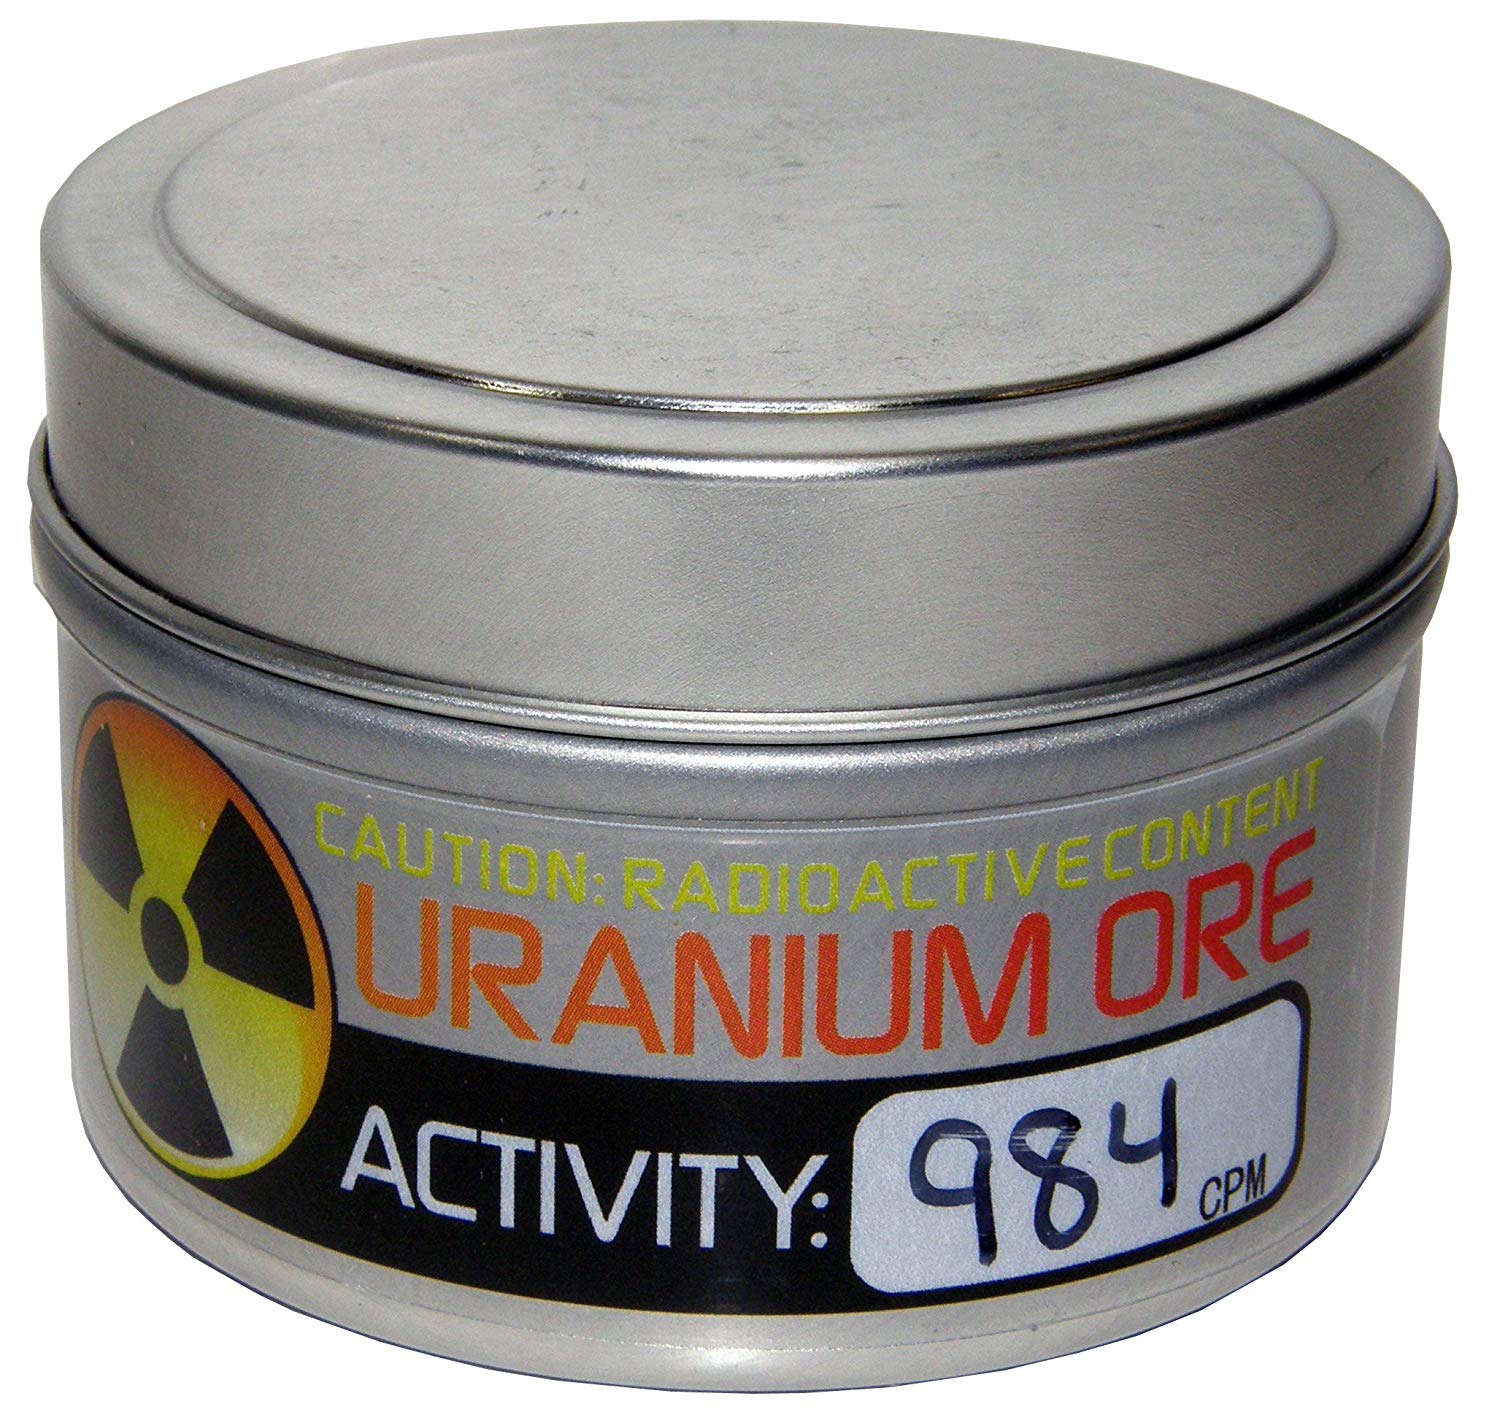 Uranium Ore - $39.95